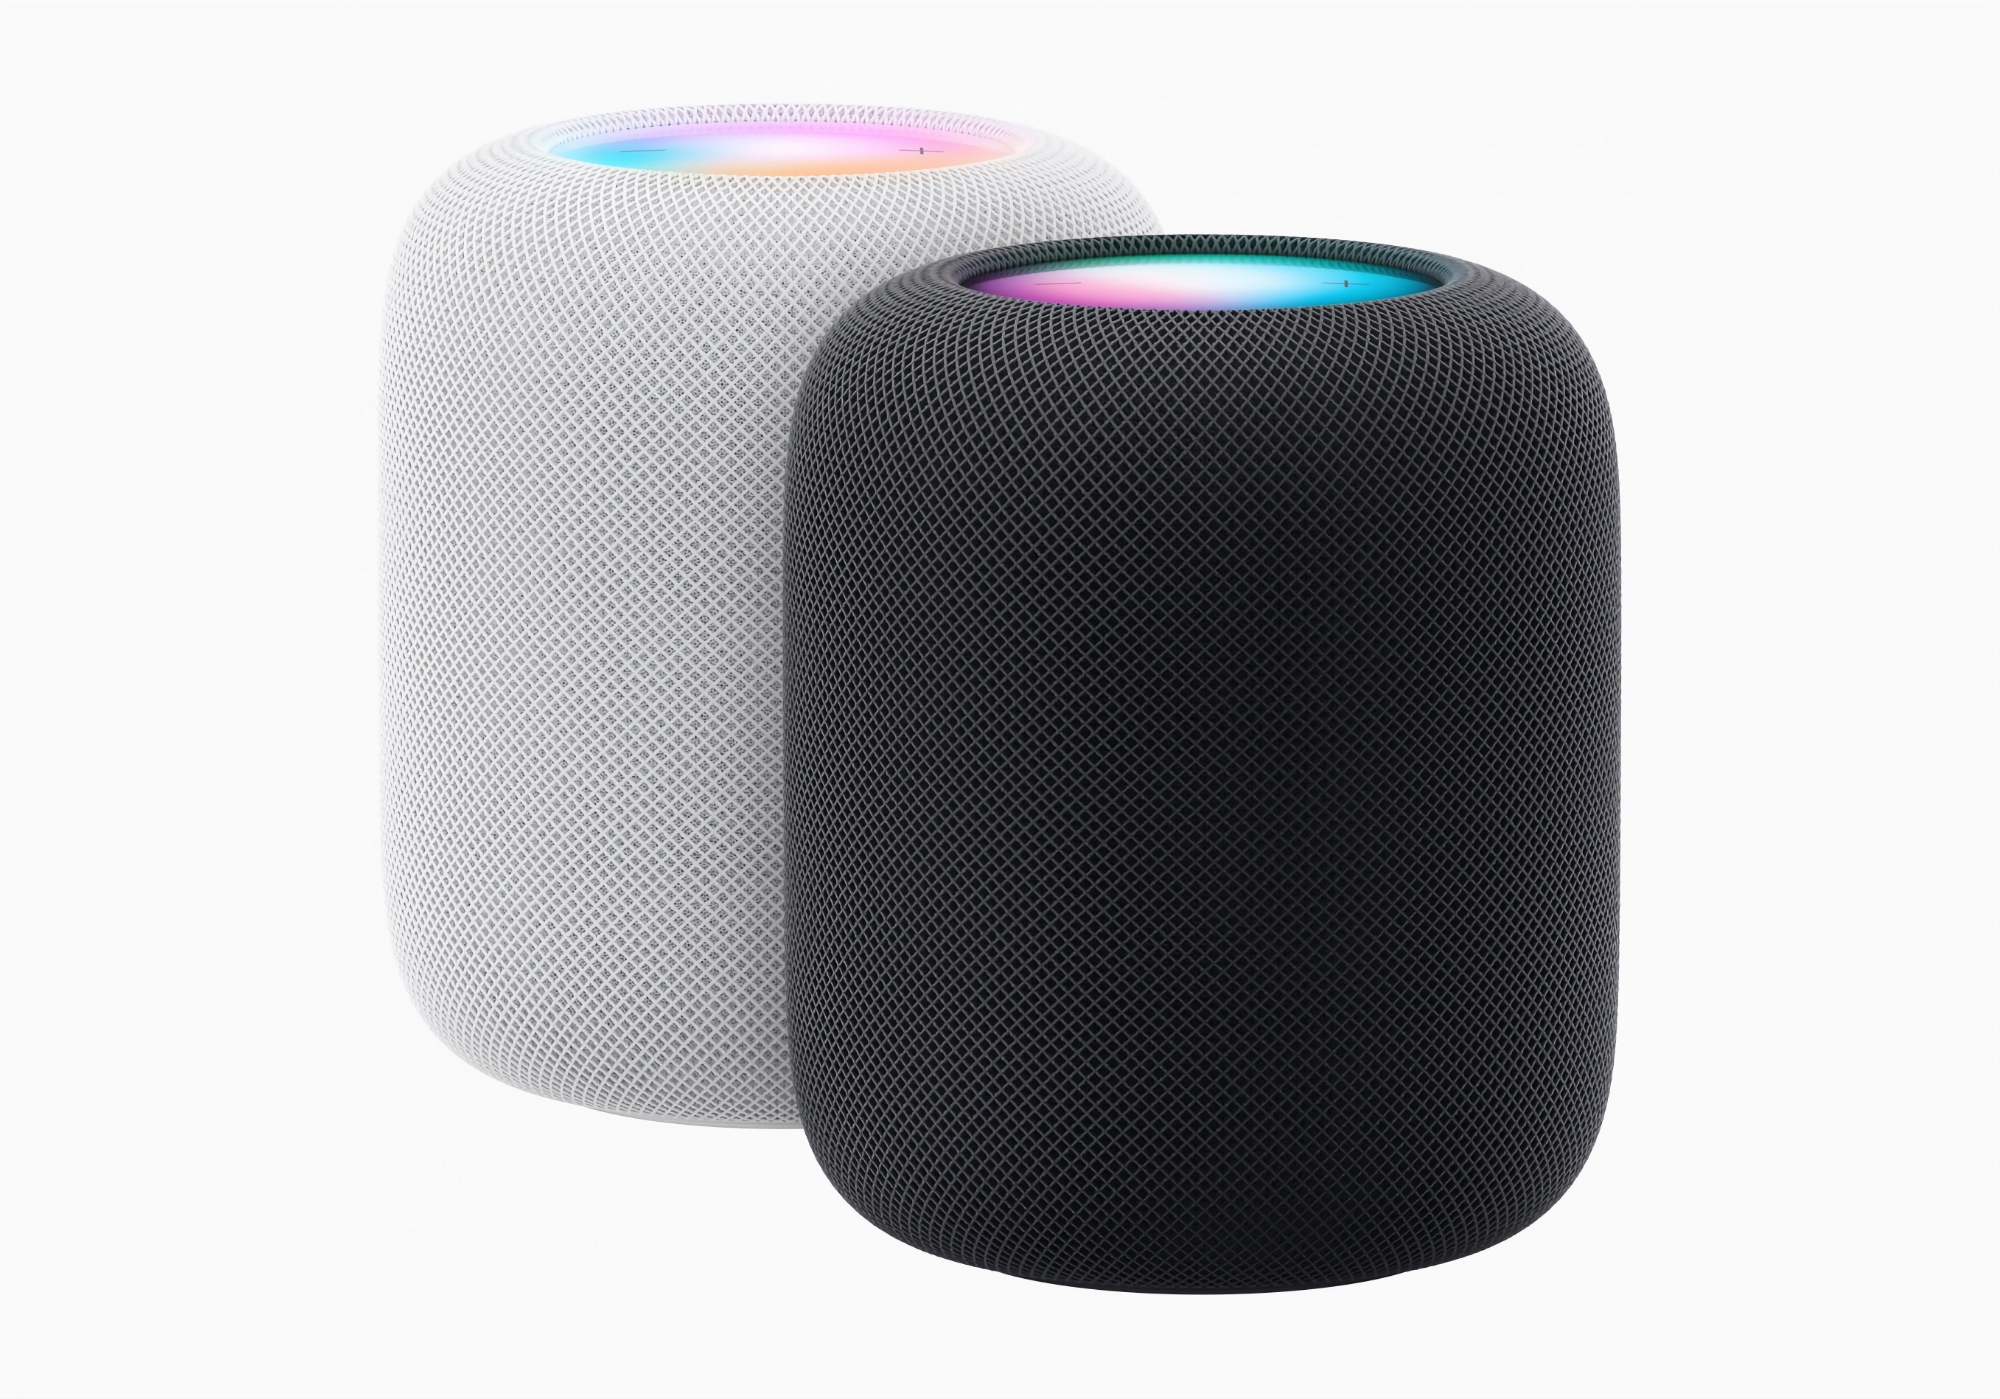 Apple ha presentato la seconda generazione di HomePod con audio migliorato, chip S7, nuove funzioni e un prezzo di 299 dollari